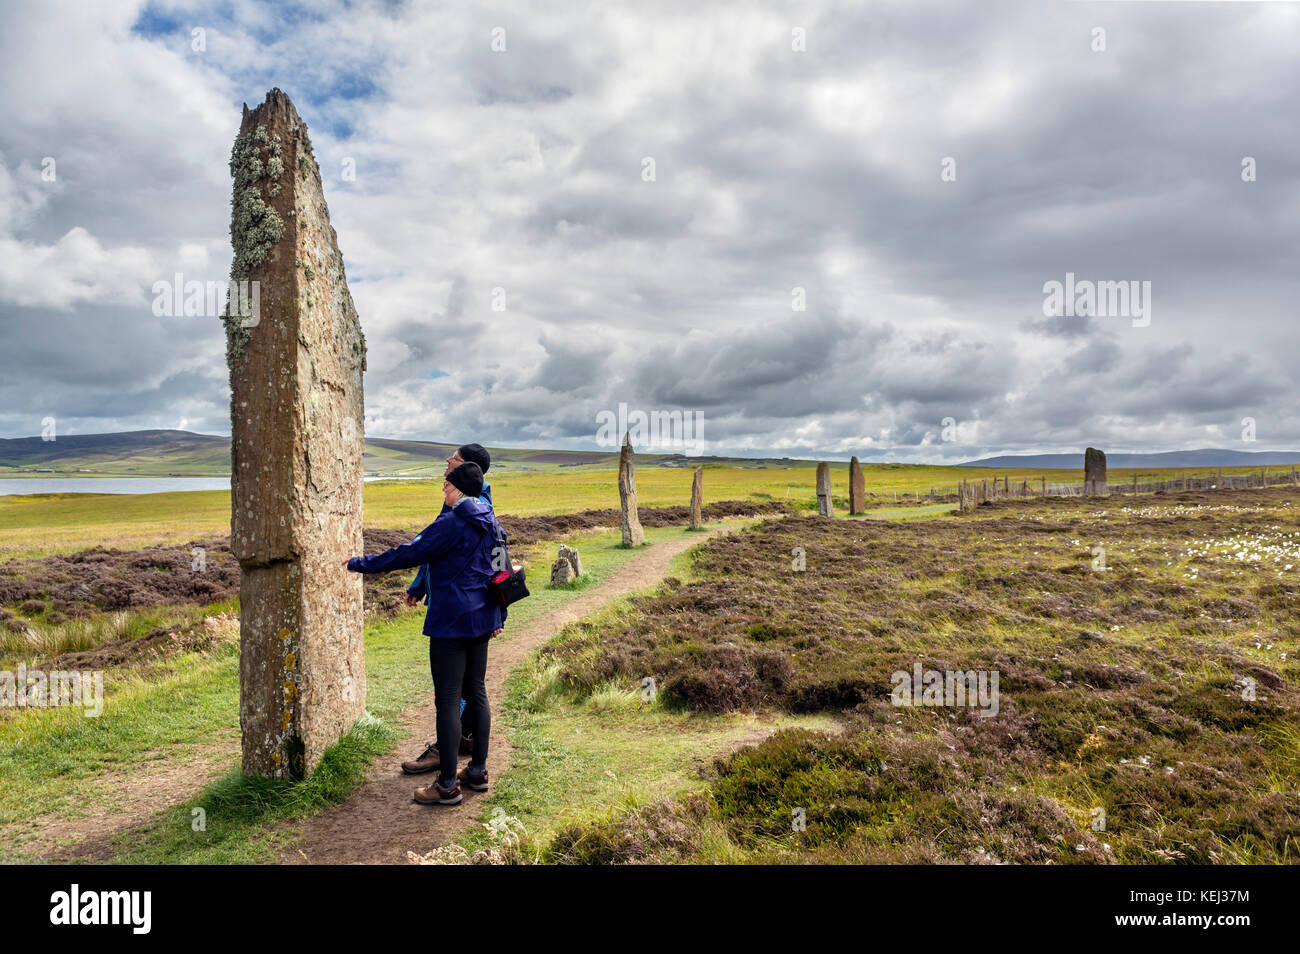 Les touristes à l'anneau de Shetlands, Orkney. Cercle de pierres néolithiques, datant d'environ 2000 à 2500 avant J.-C., Mainland, Orkney, Scotland, UK Banque D'Images